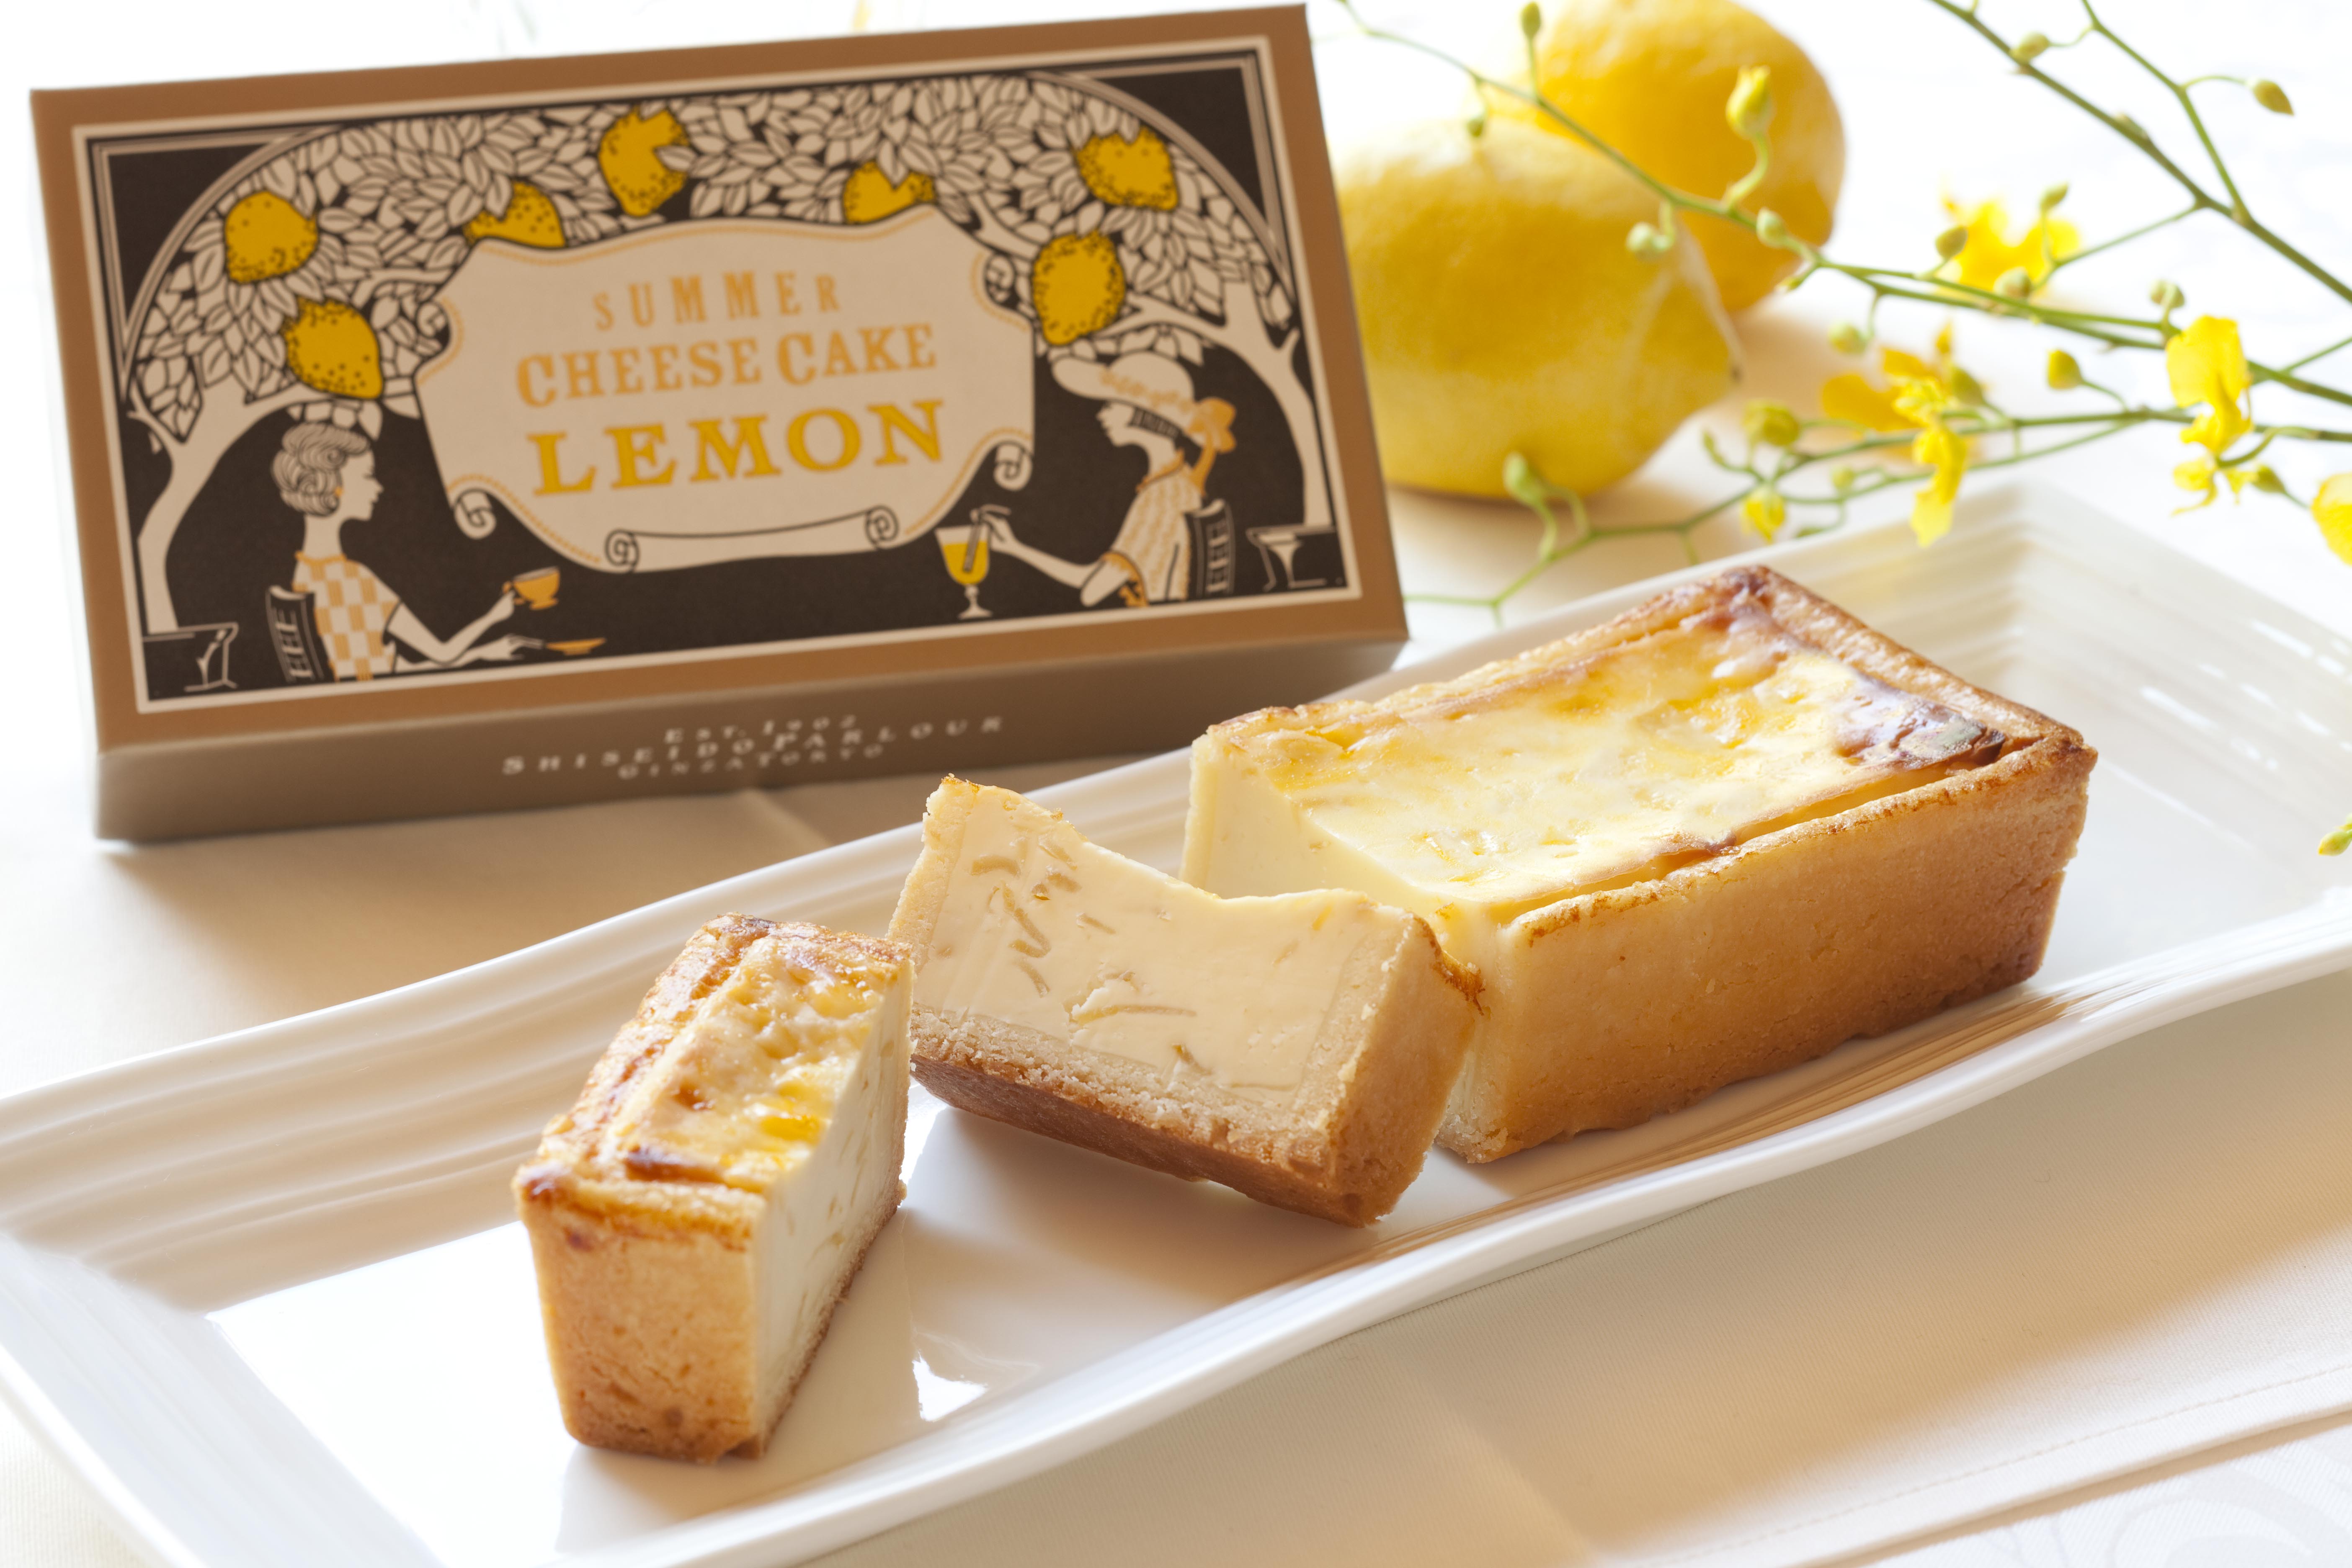 夏の手焼きチーズケーキ レモン 5月25日 土 より限定新発売 株式会社 資生堂パーラーのプレスリリース